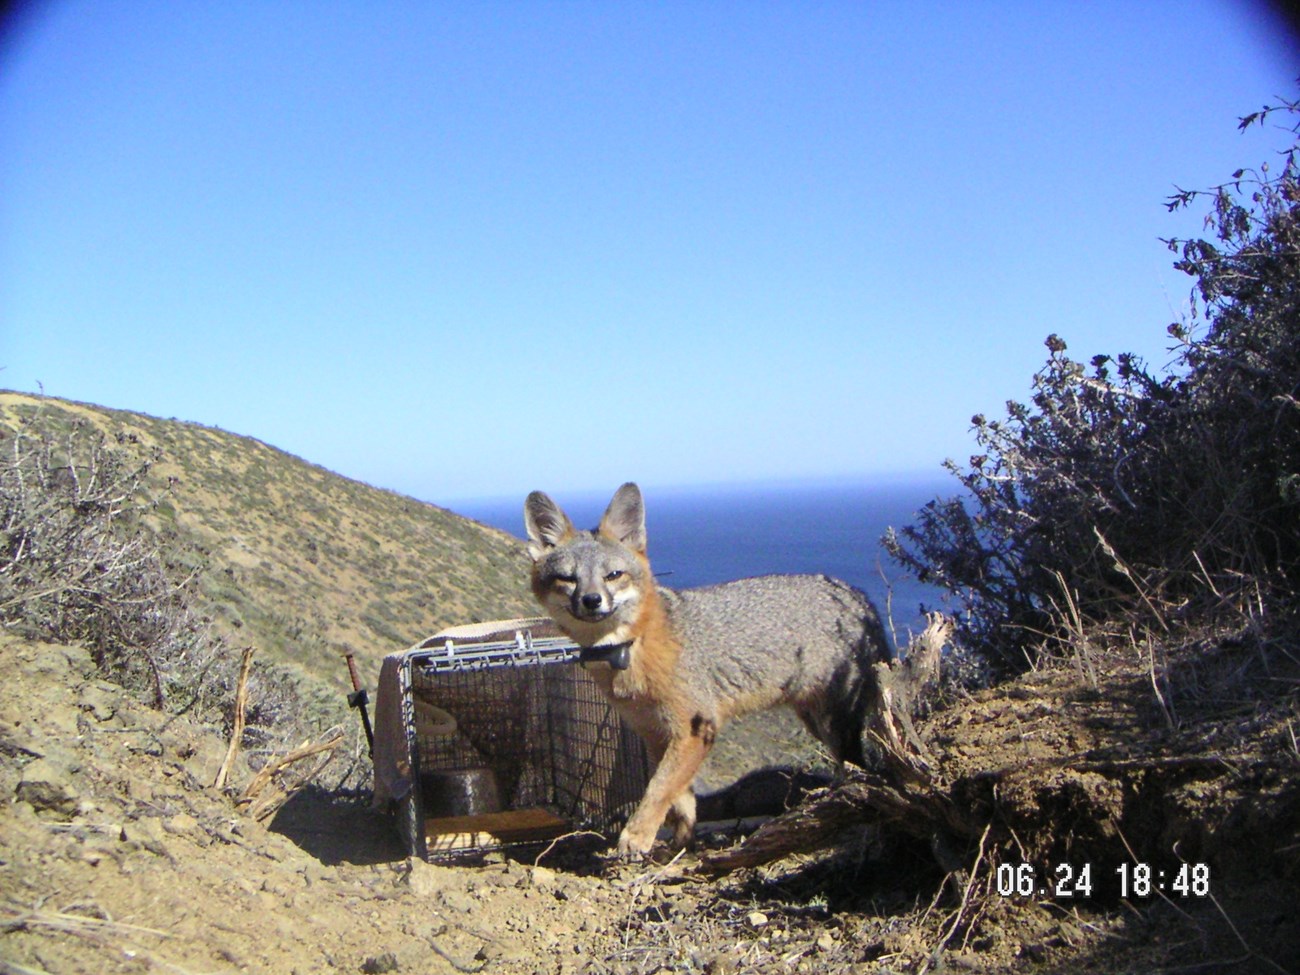 Remote camera image of a radio-collared island fox by a box trap.